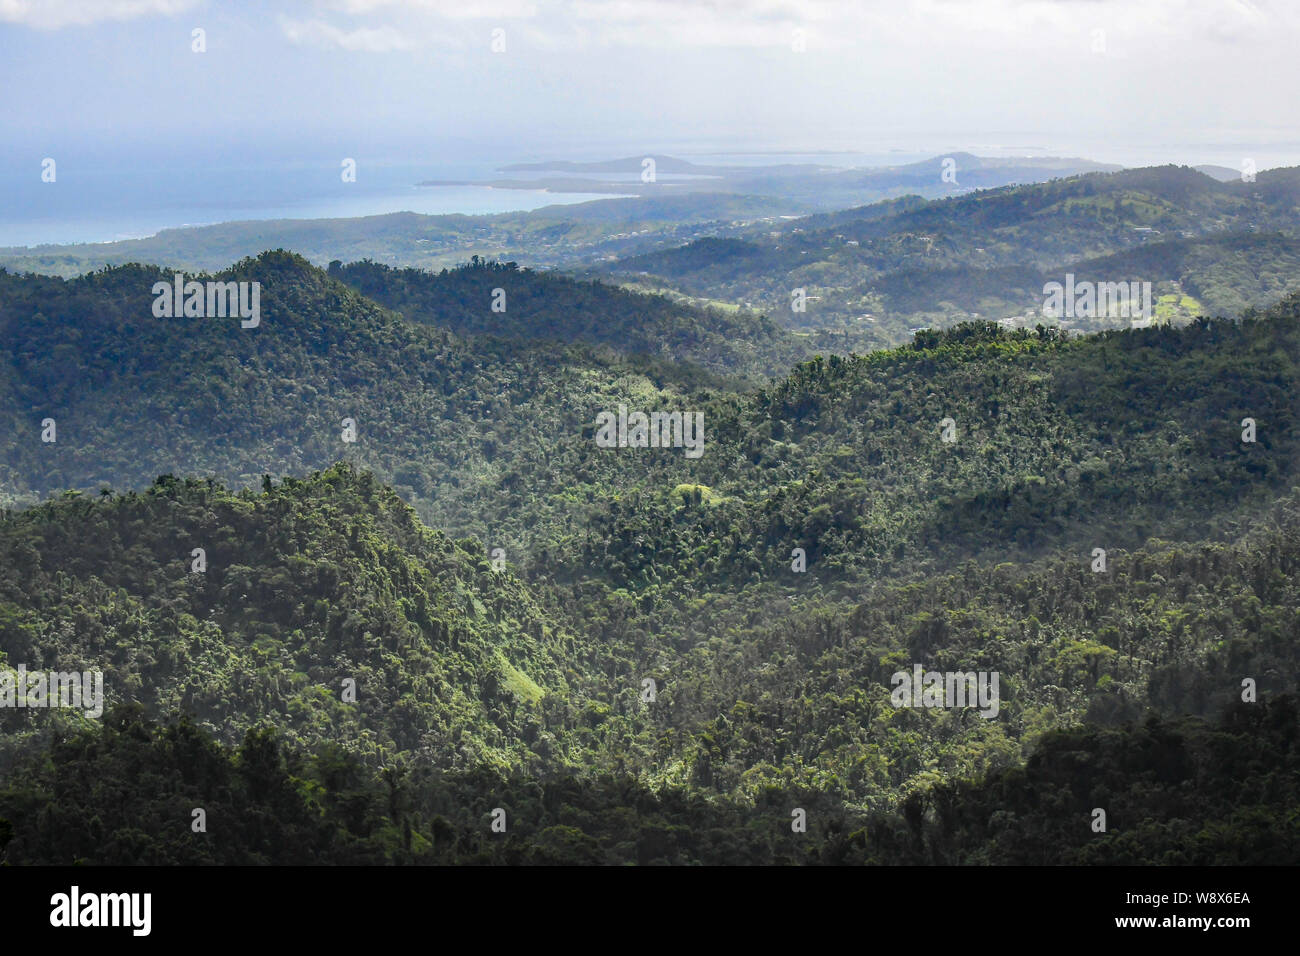 El Yunque National Forest Puerto Rico - uragano Maria recovery ha iniziato nella giungla tropicale rain forest - flora della giungla / flora della foresta pluviale Foto Stock